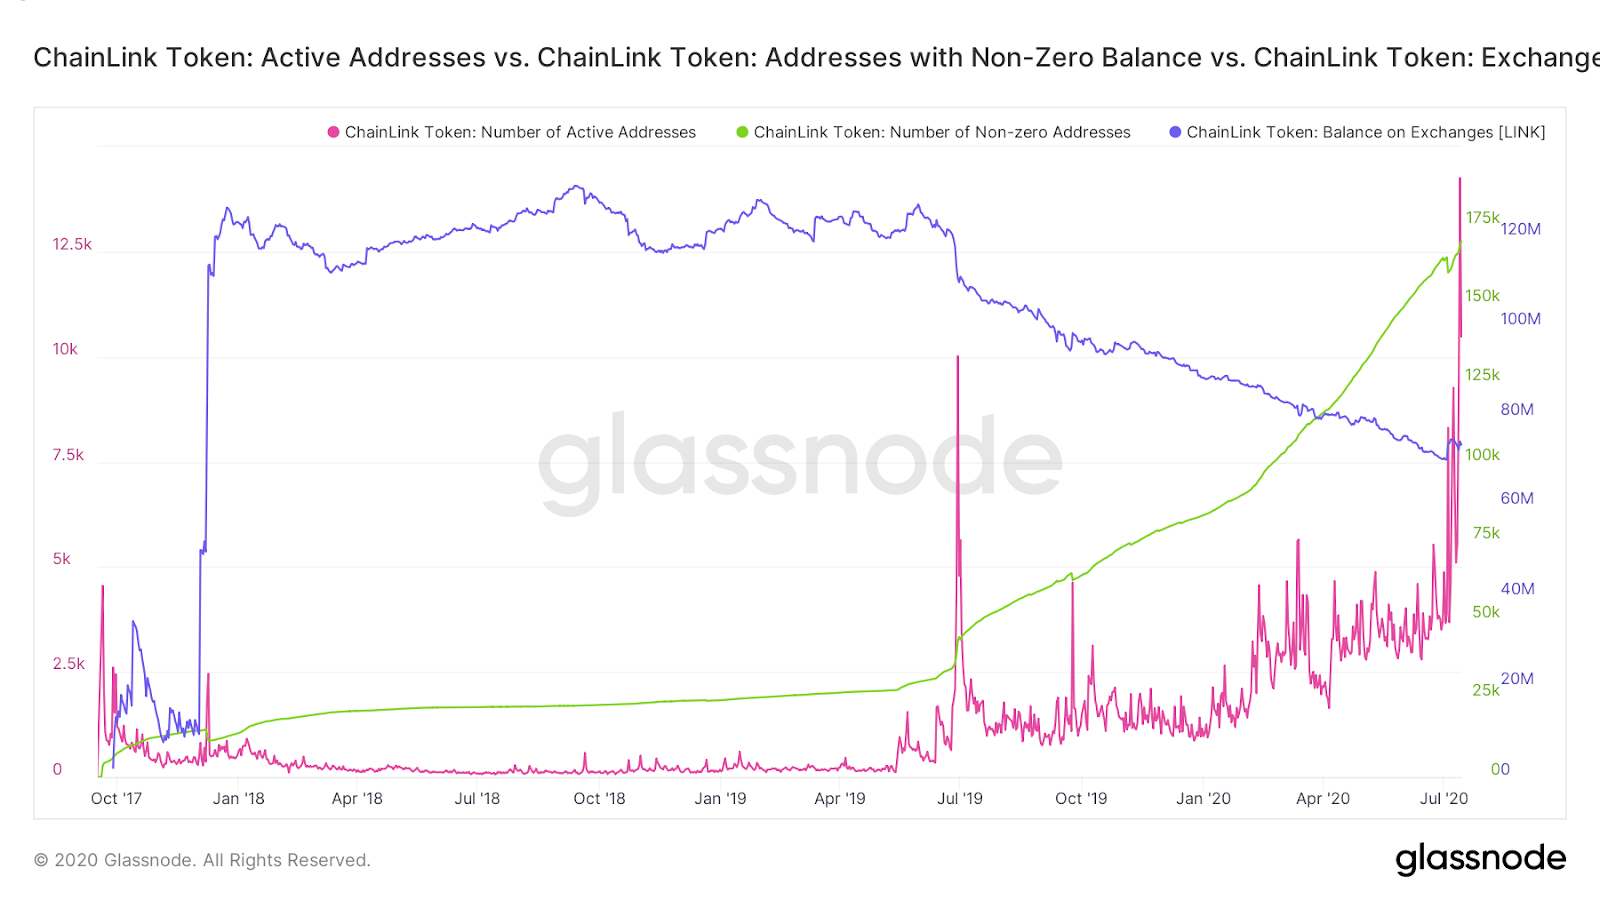 LINK active addresses, addresses with non-zero balance & exchange balances